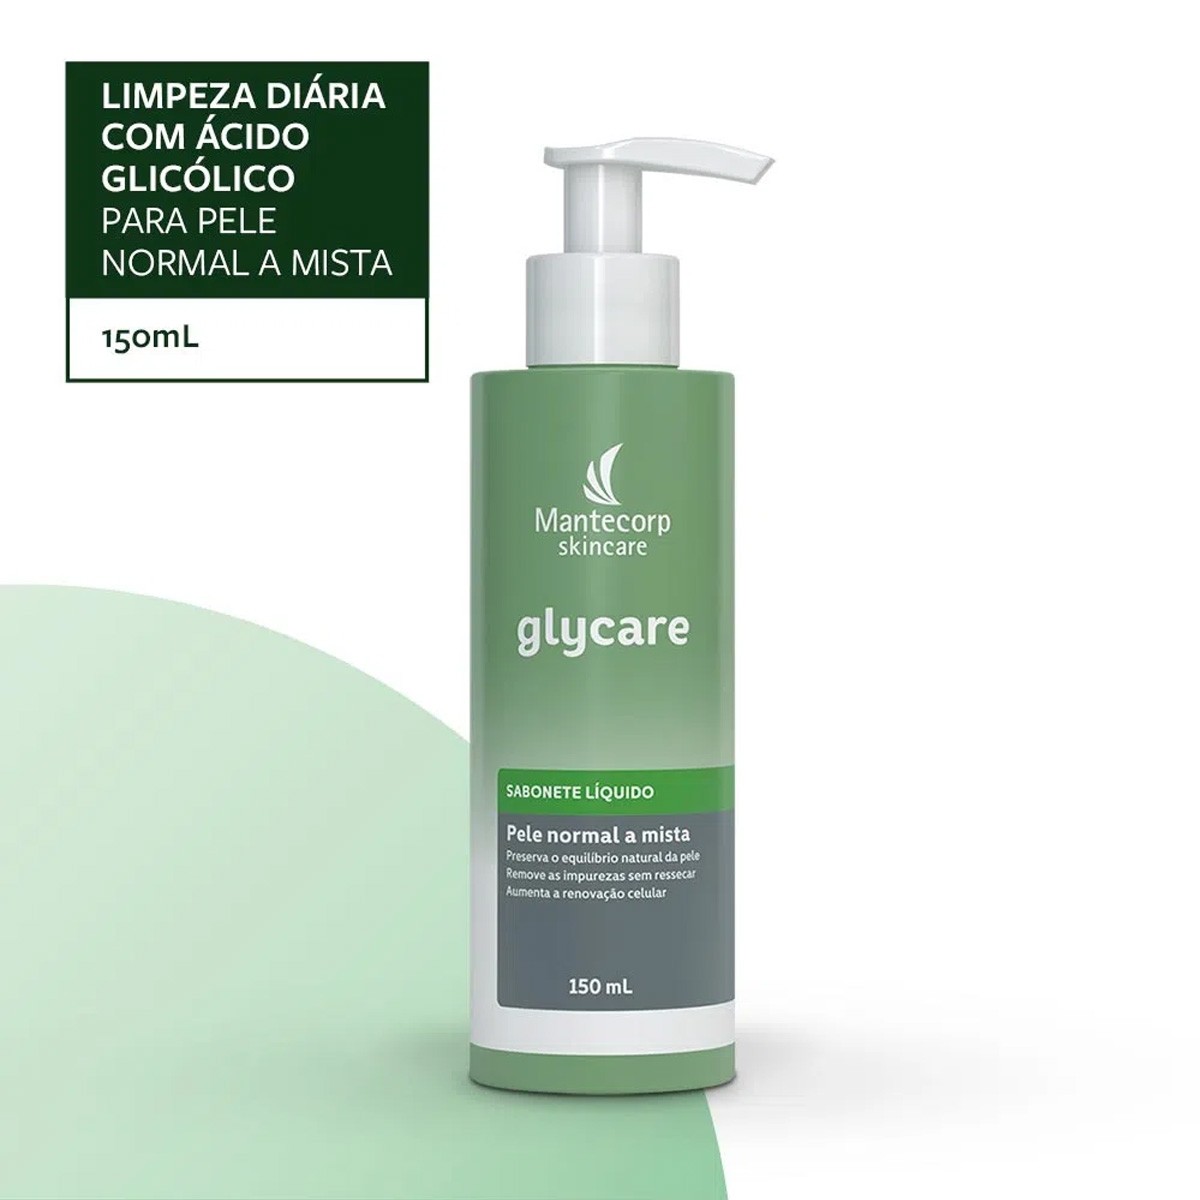 https://www.drogariaminasbrasil.com.br/media/product/9c5/sabonete-liquido-facial-glycare-com-150ml-mantecorp-skincare-c63.jpg